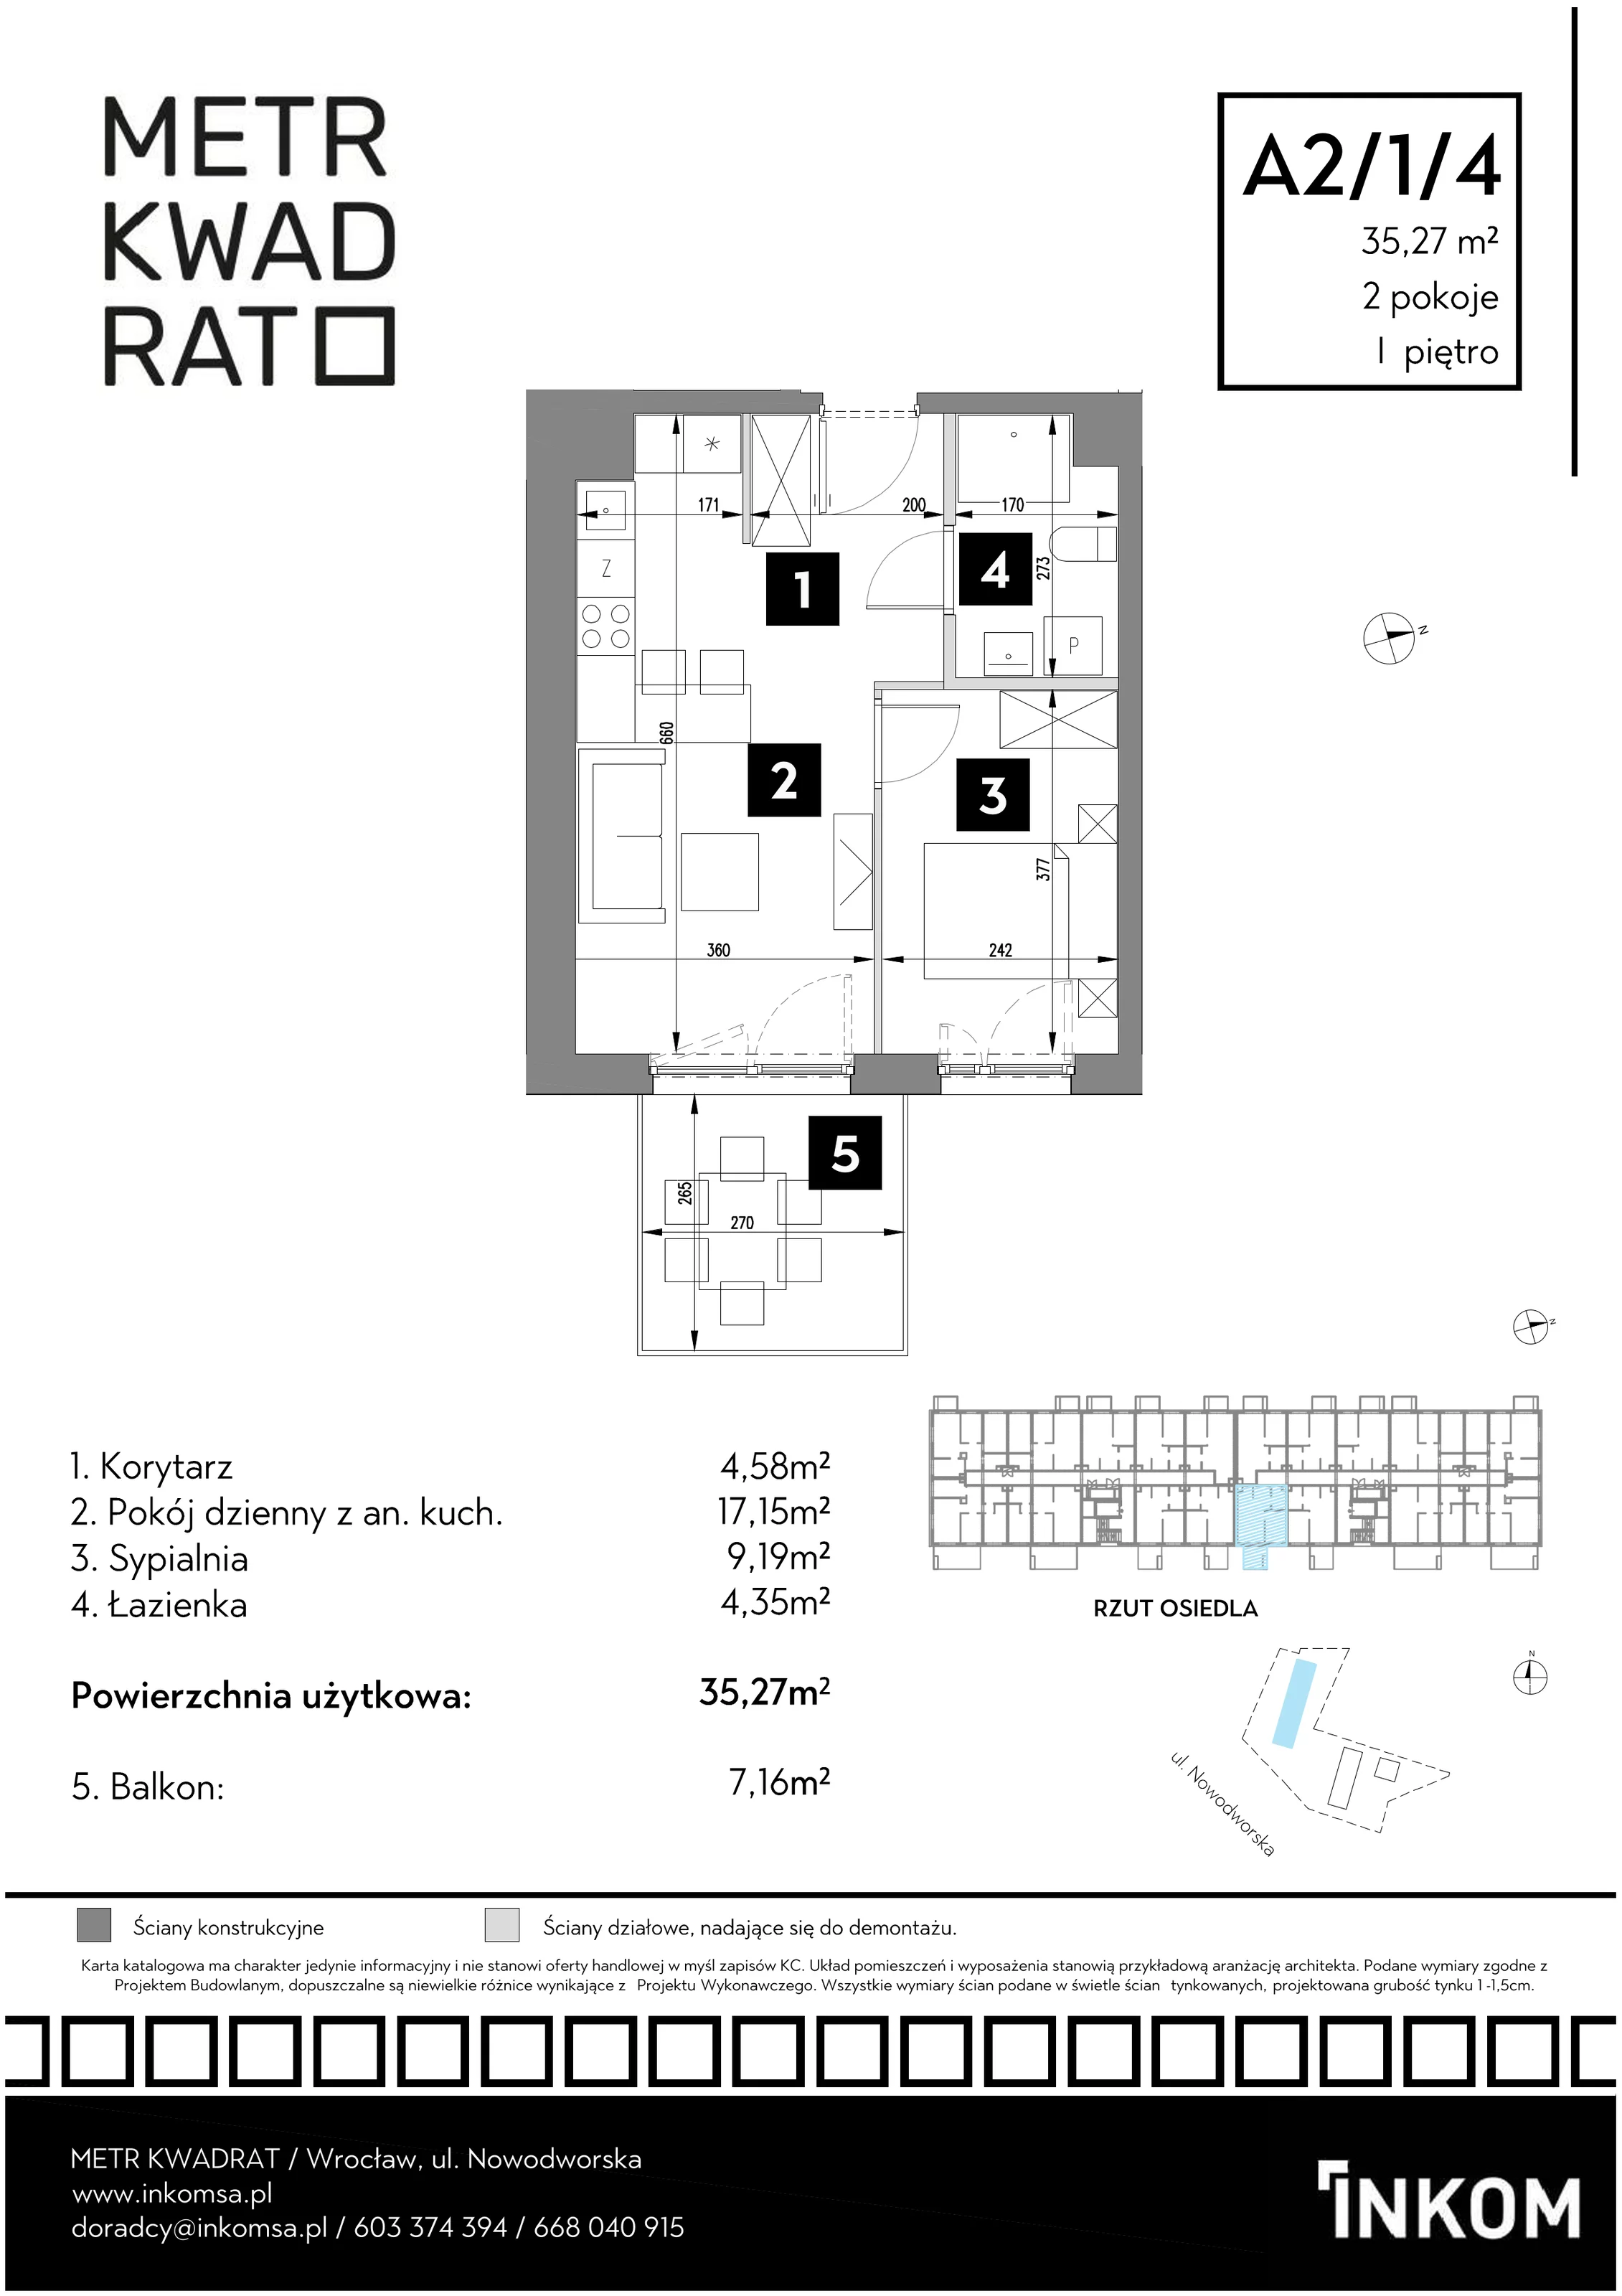 Mieszkanie 35,27 m², piętro 1, oferta nr A2/1/4, Metr Kwadrat, Wrocław, Nowy Dwór, ul. Nowodworska 17B